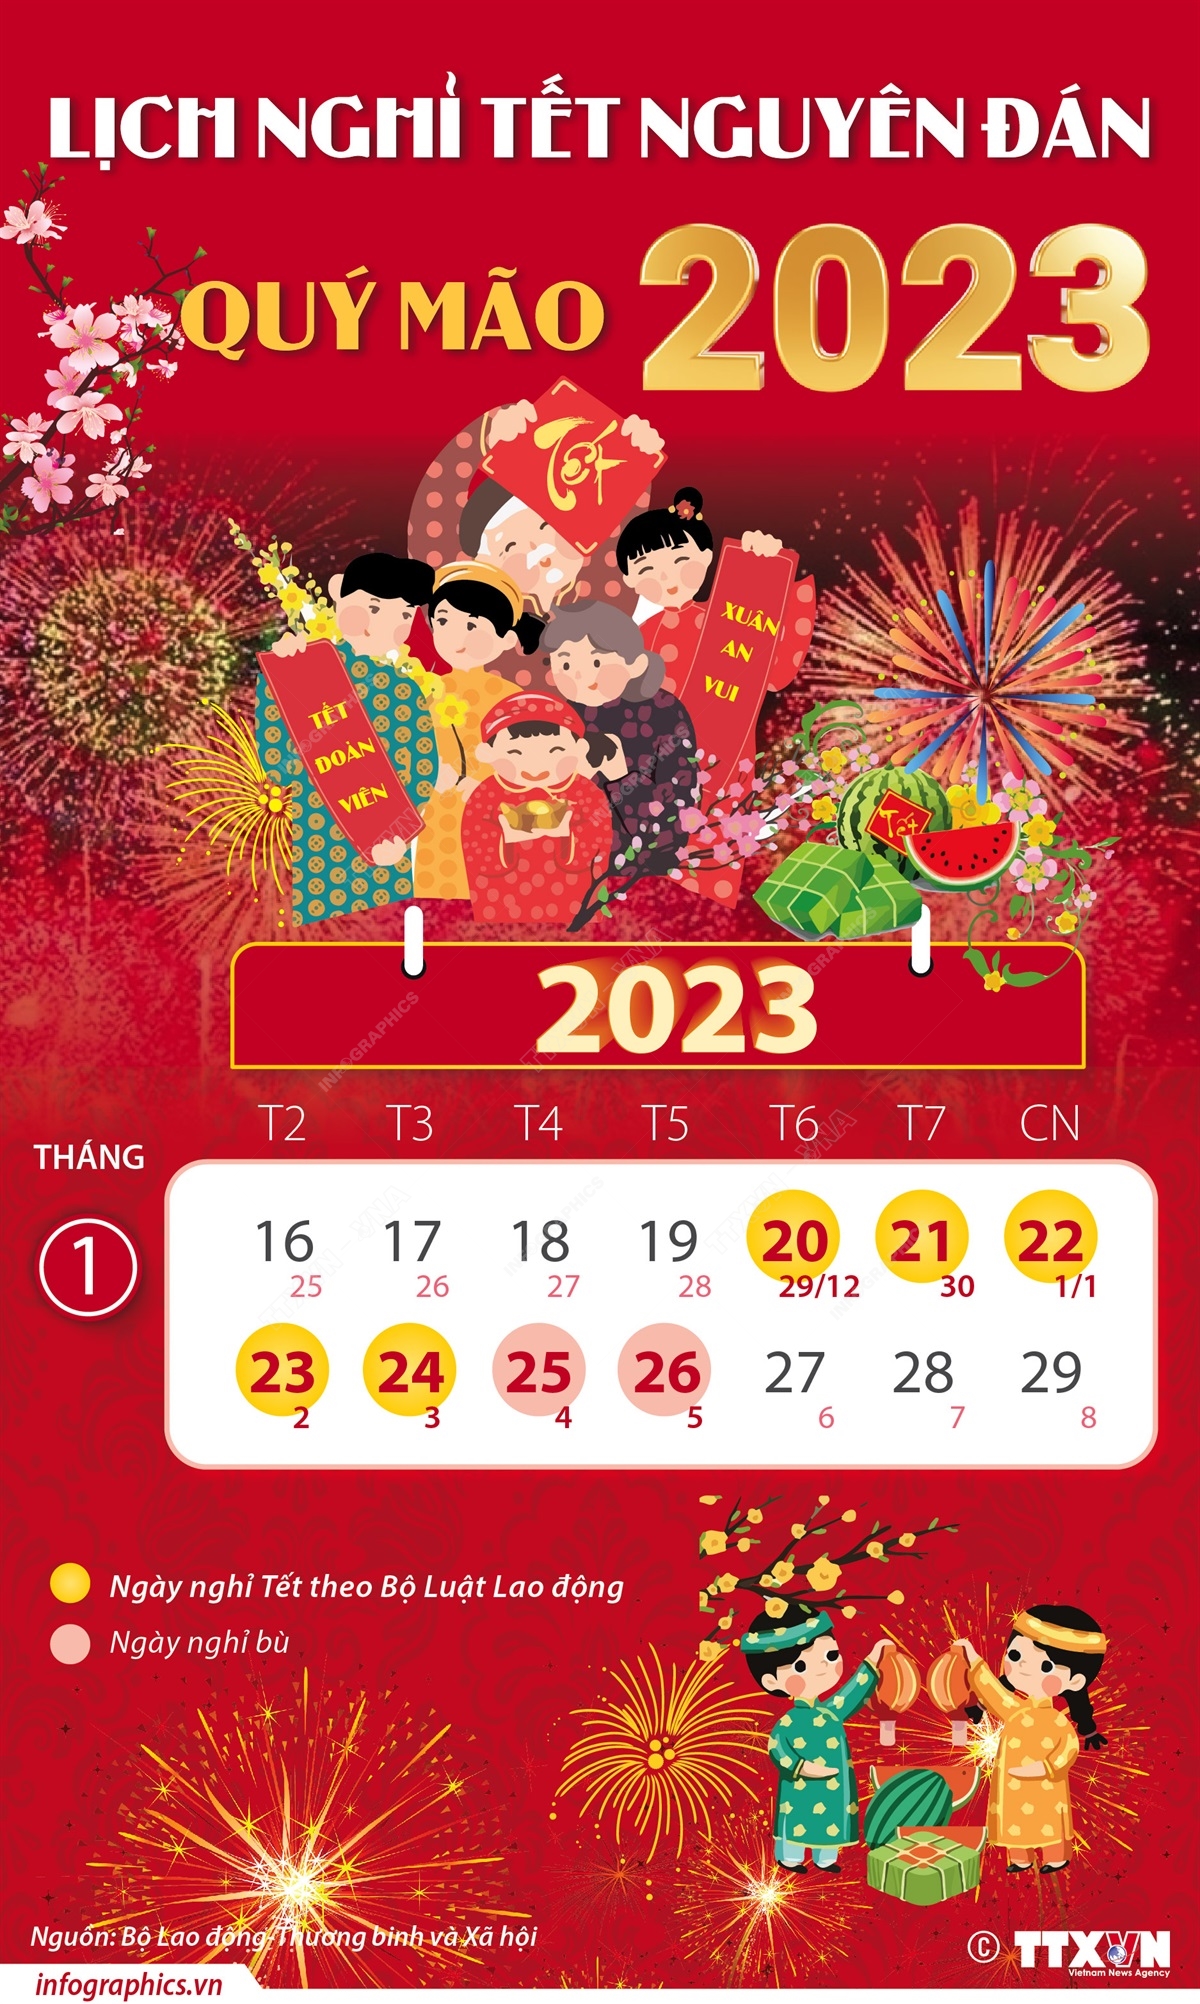 Lịch nghỉ Tết Quý Mão, Lễ Quốc khánh 2023